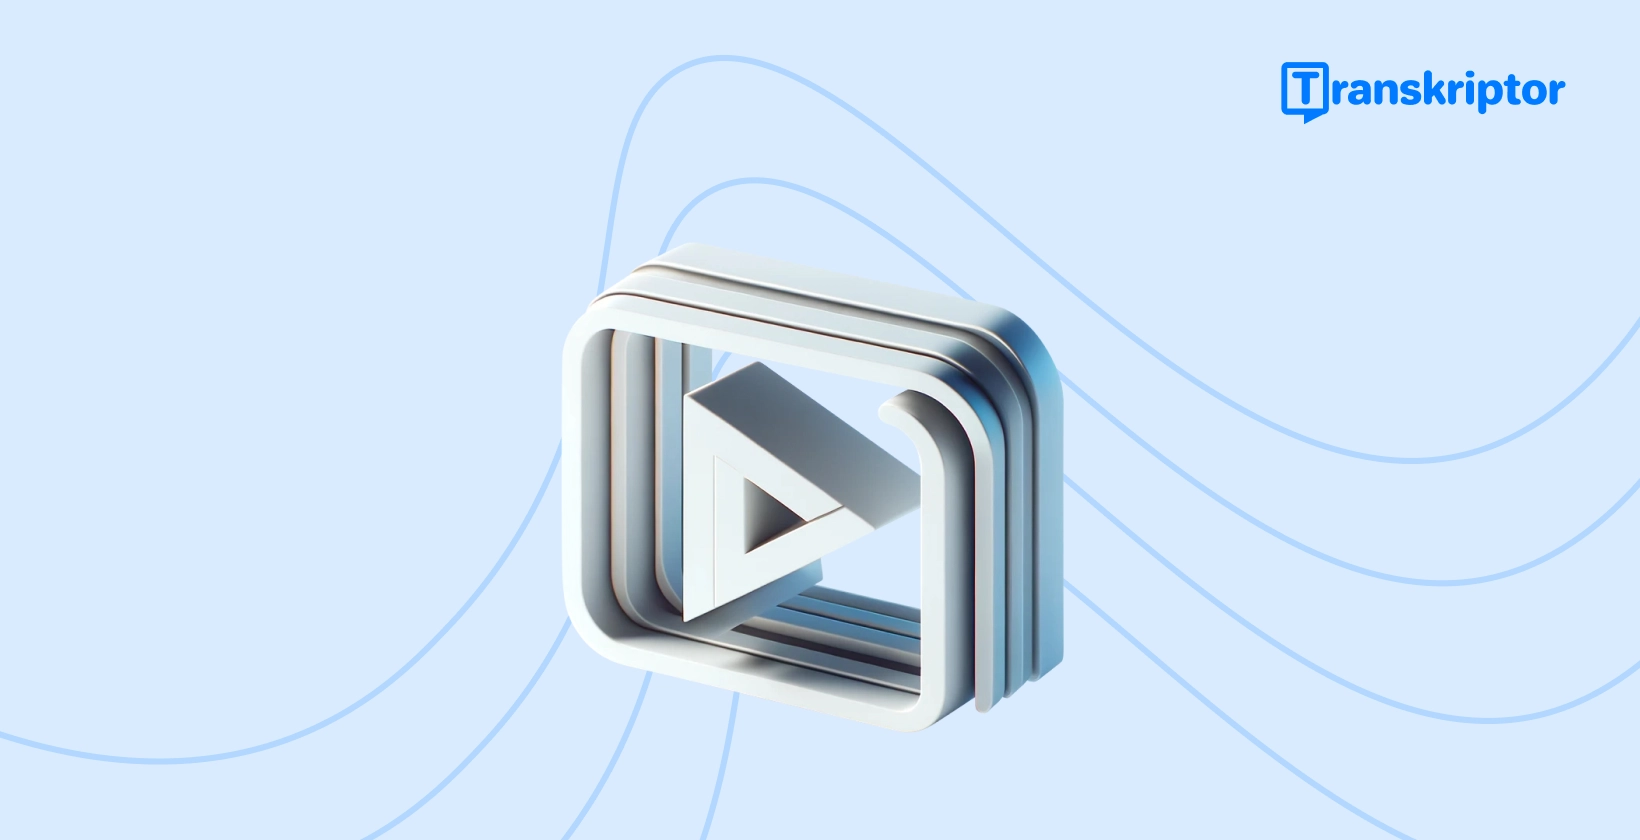 비디오에 캡션을 추가하는 방법에 대한 단계별 자습서 배너와 비디오 편집을 상징하는 재생 버튼 아이콘.